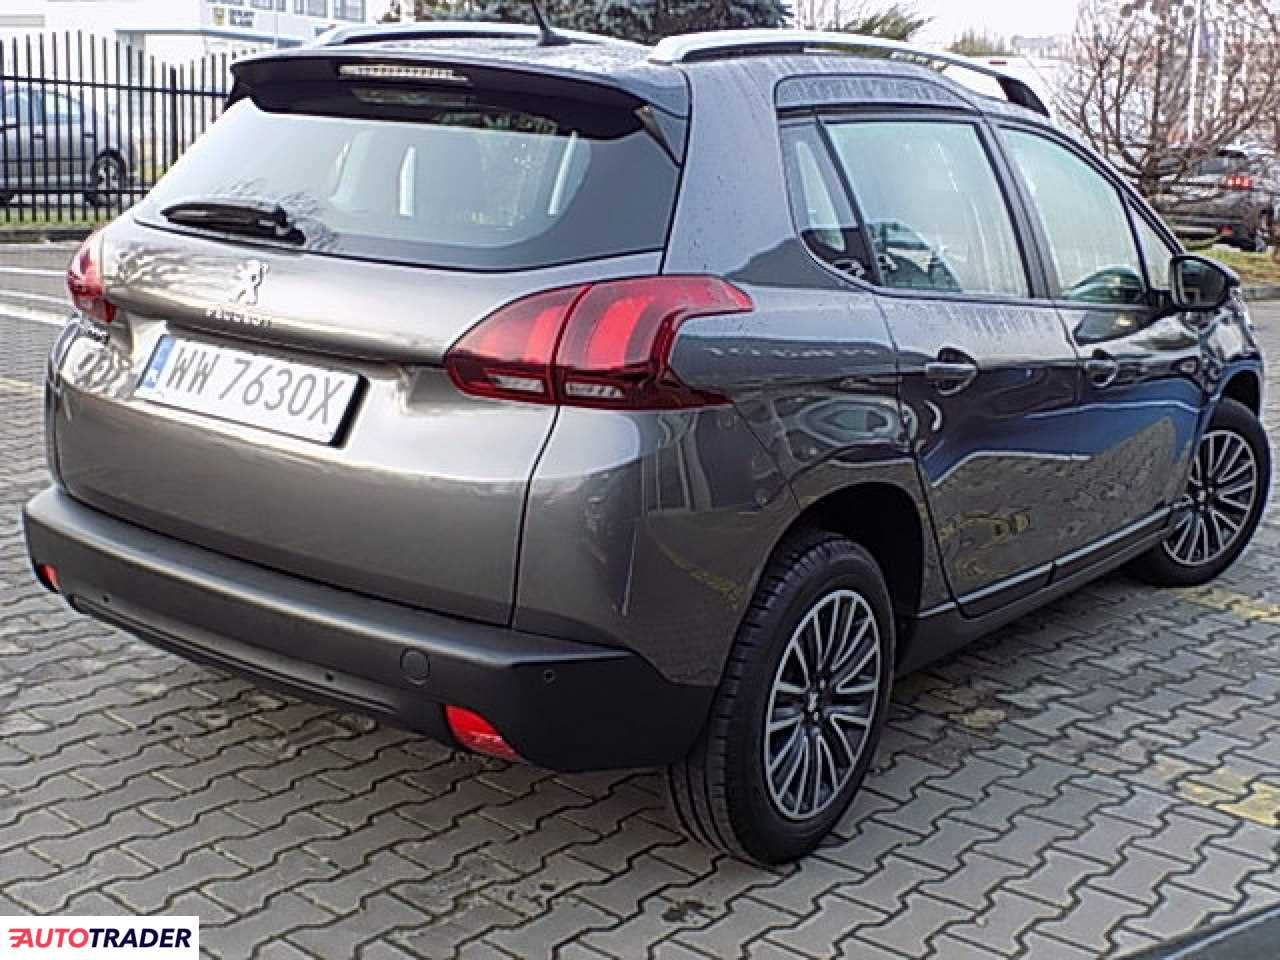 Peugeot 2008 1.2 benzyna 110 KM 2019r. (Wrocław